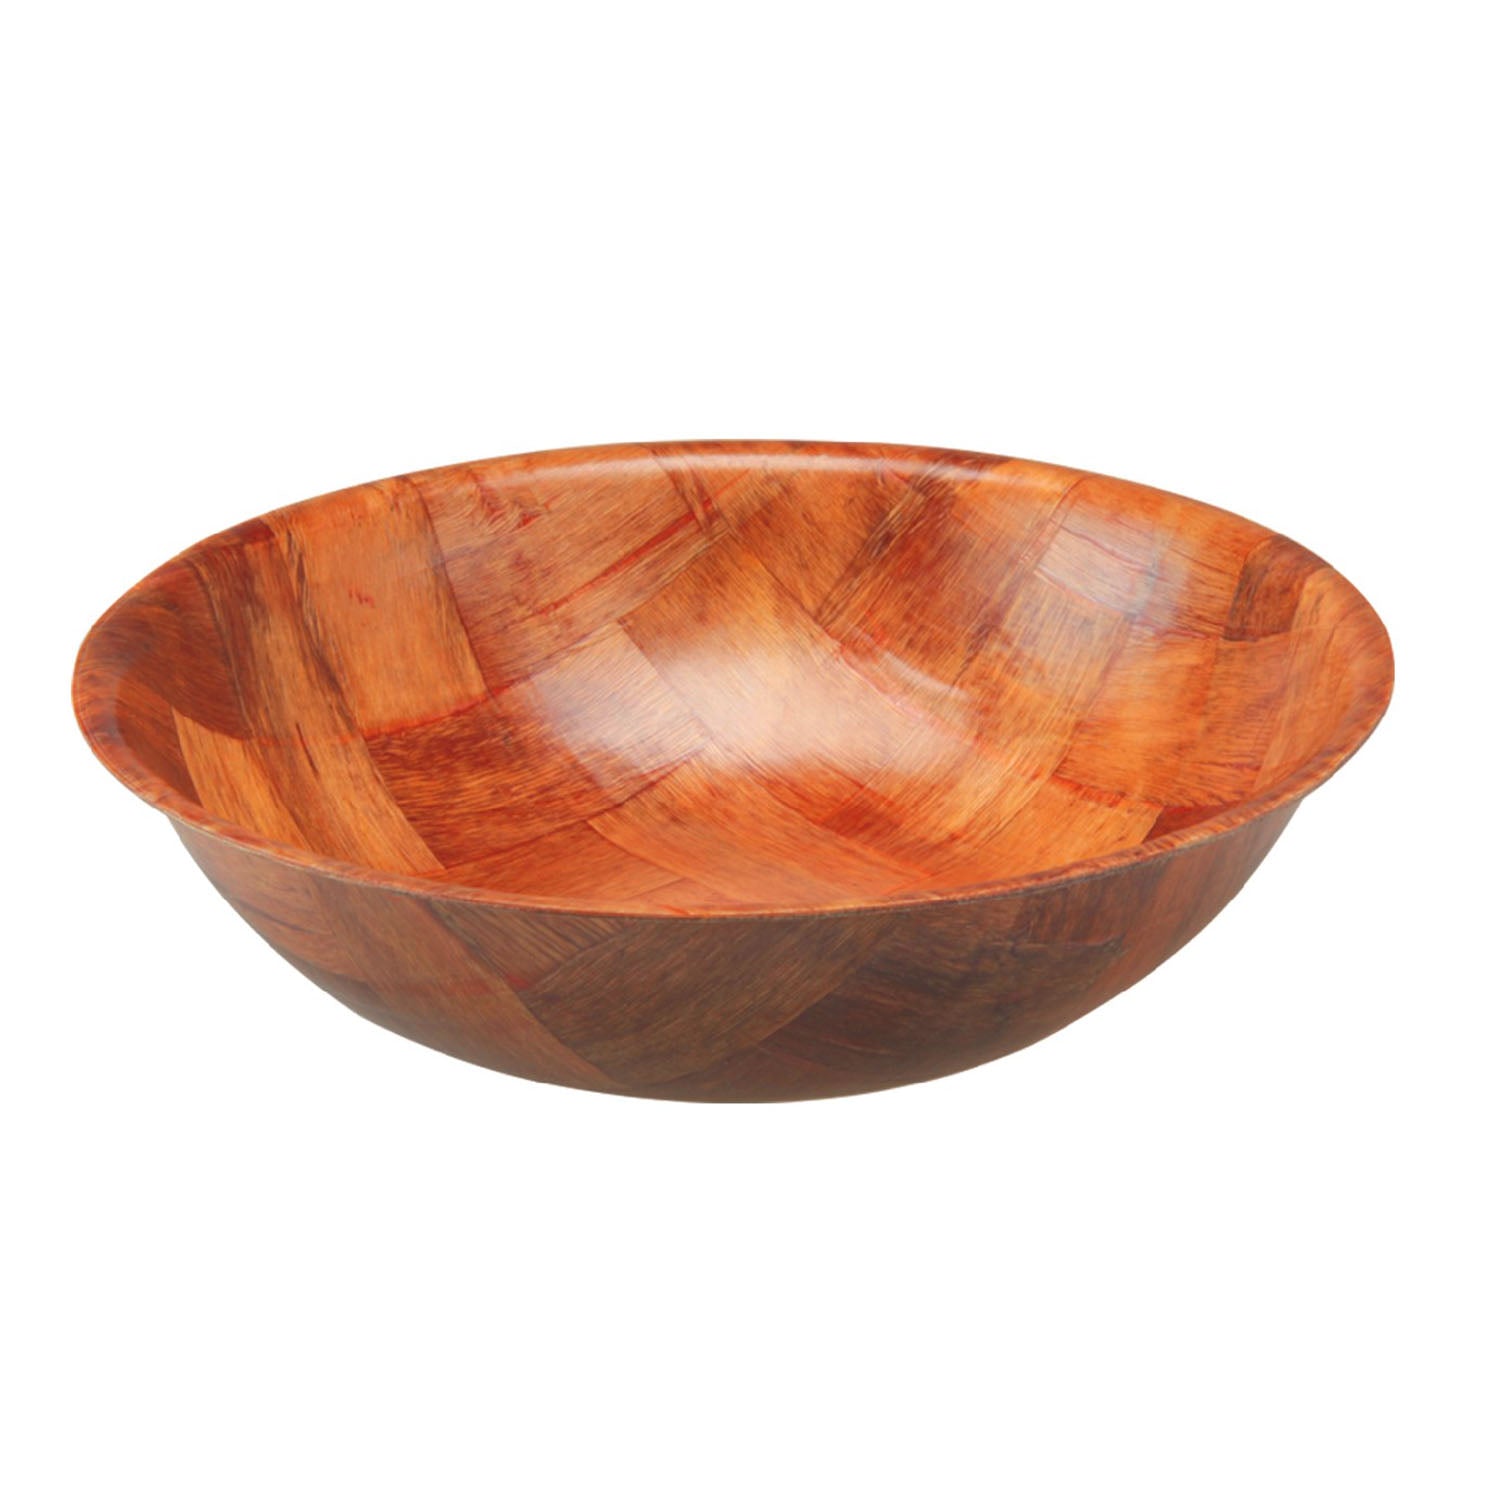 25cm Round Weave Wooden Serving Kitchen Bowl